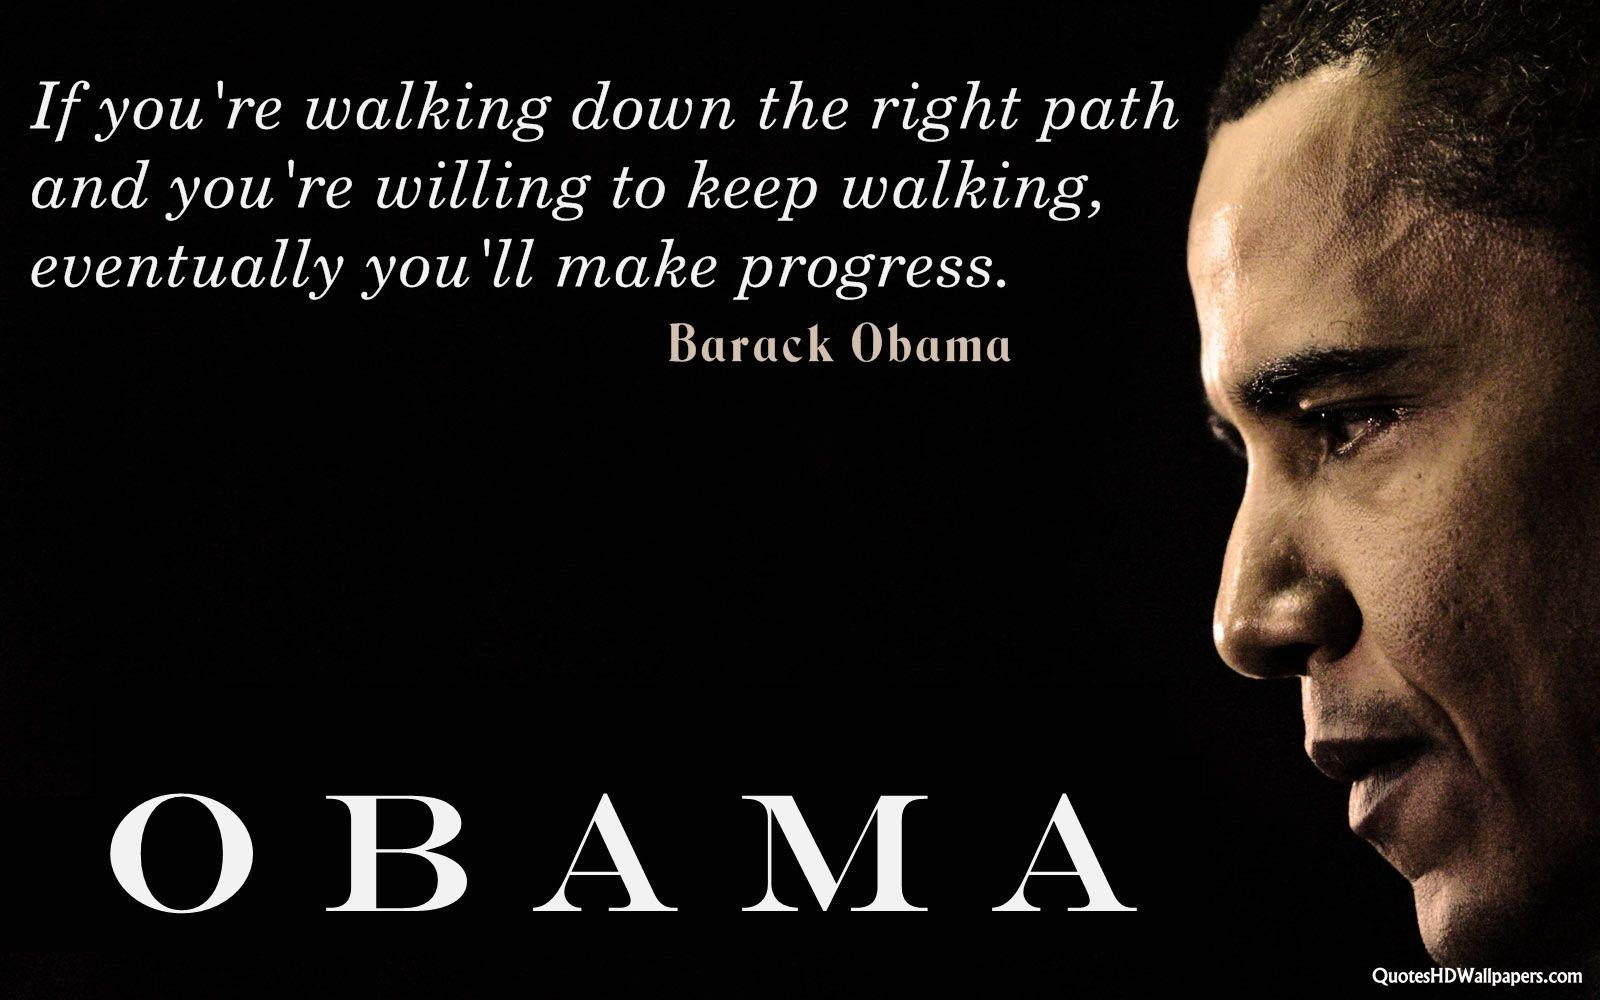 Barack Obama. HD Wallpaper Image